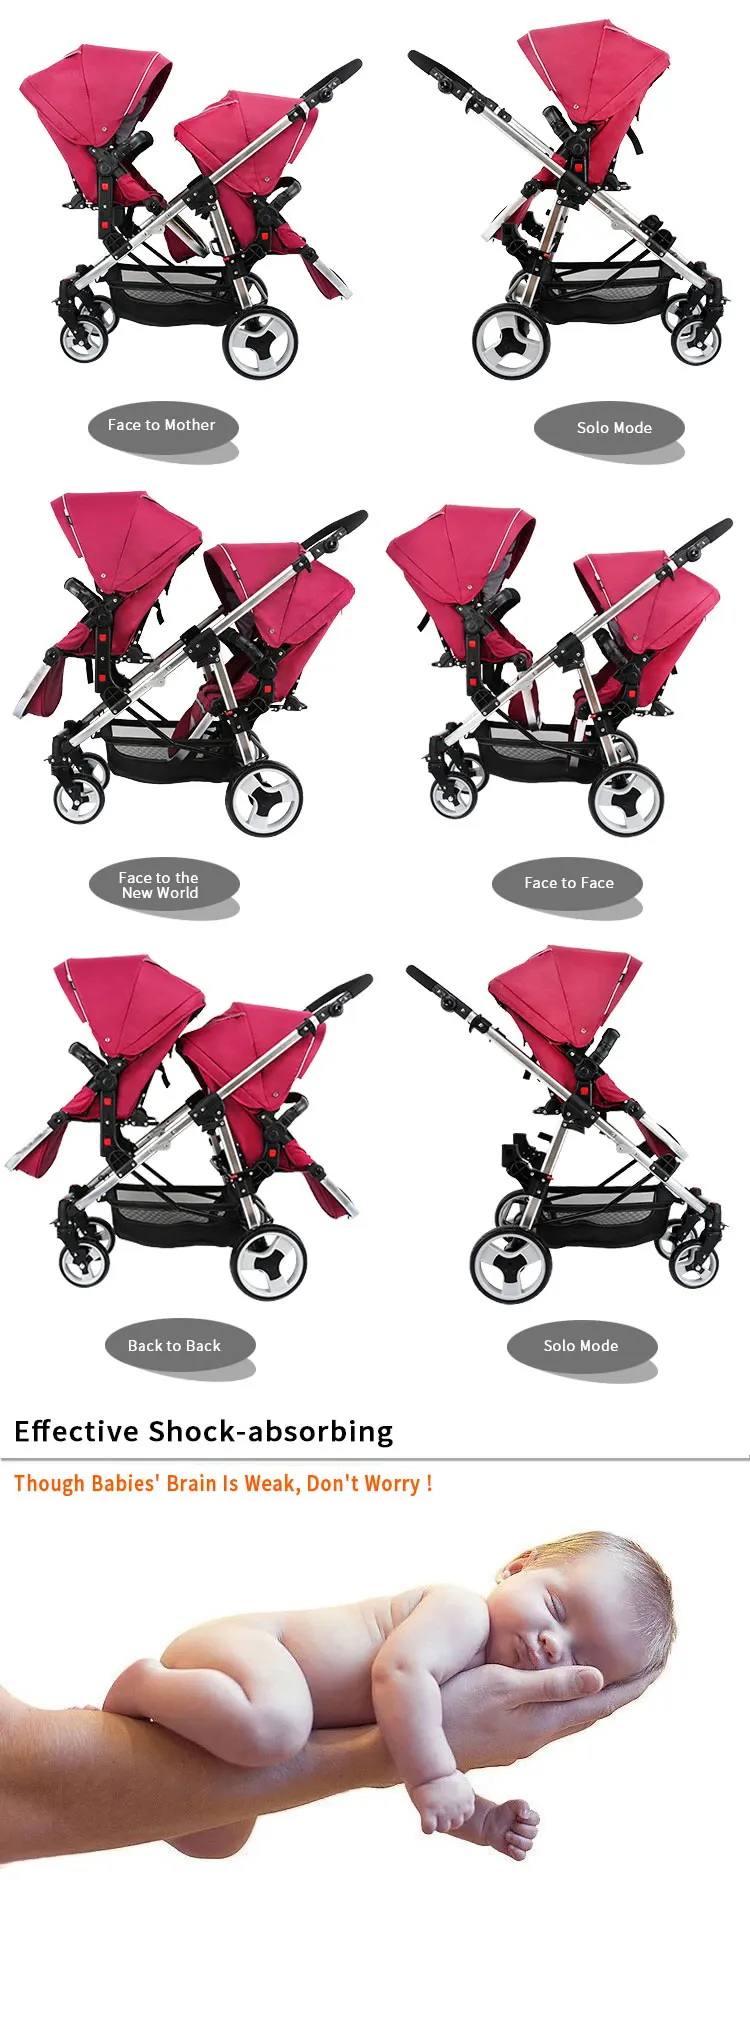 Прогулочная коляска Godmy для близнецов с высокой подвеской, для второго ребенка, для близнецов, может сидеть до и после